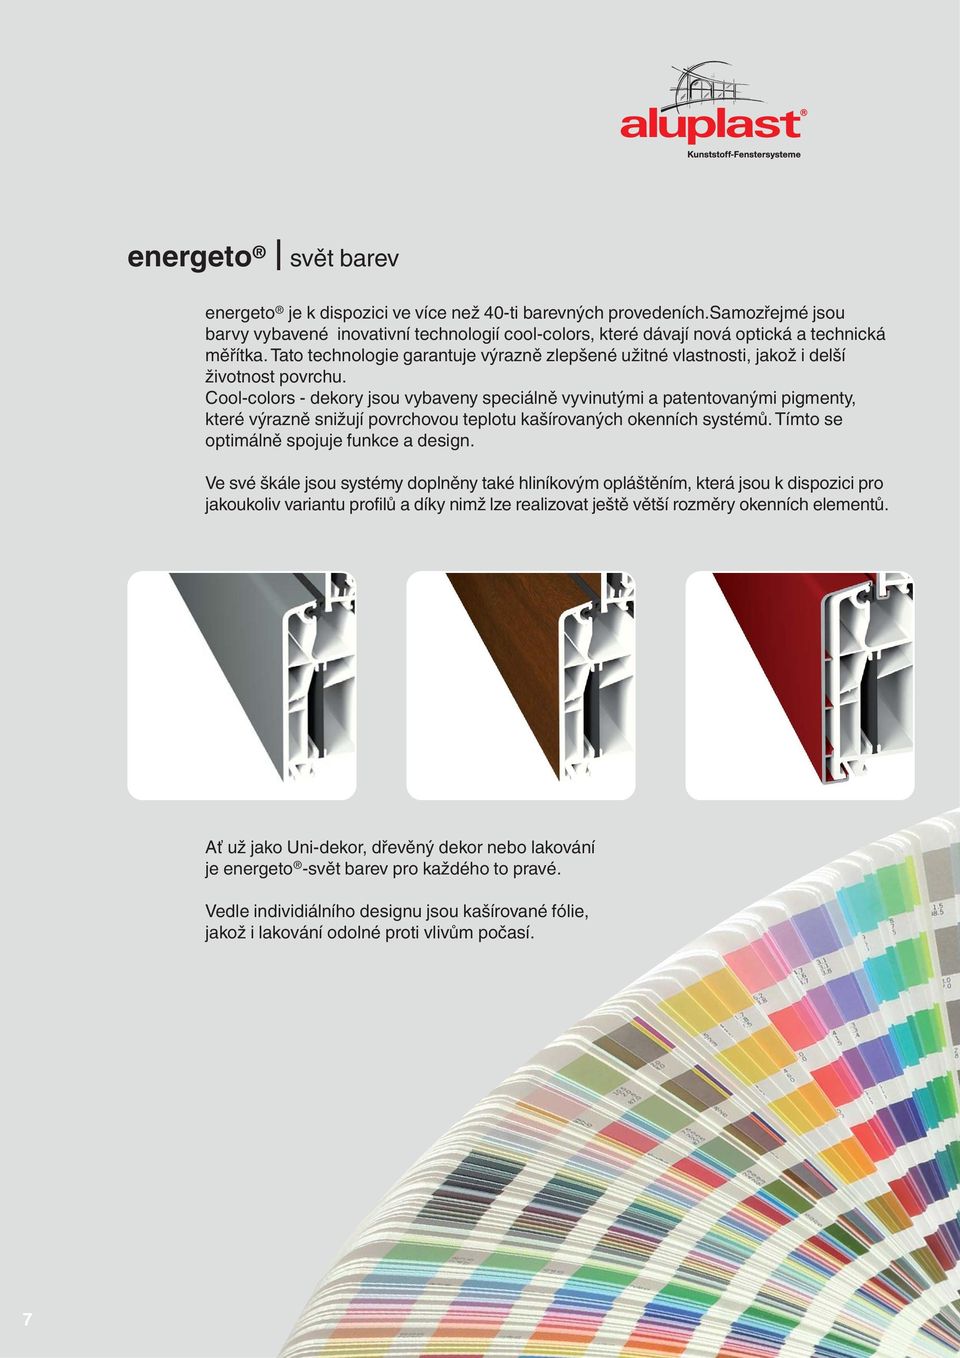 Cool-colors - dekory jsou vybaveny speciálně vyvinutými a patentovanými pigmenty, které výrazně snižují povrchovou teplotu kašírovaných okenních systémů. Tímto se optimálně spojuje funkce a design.